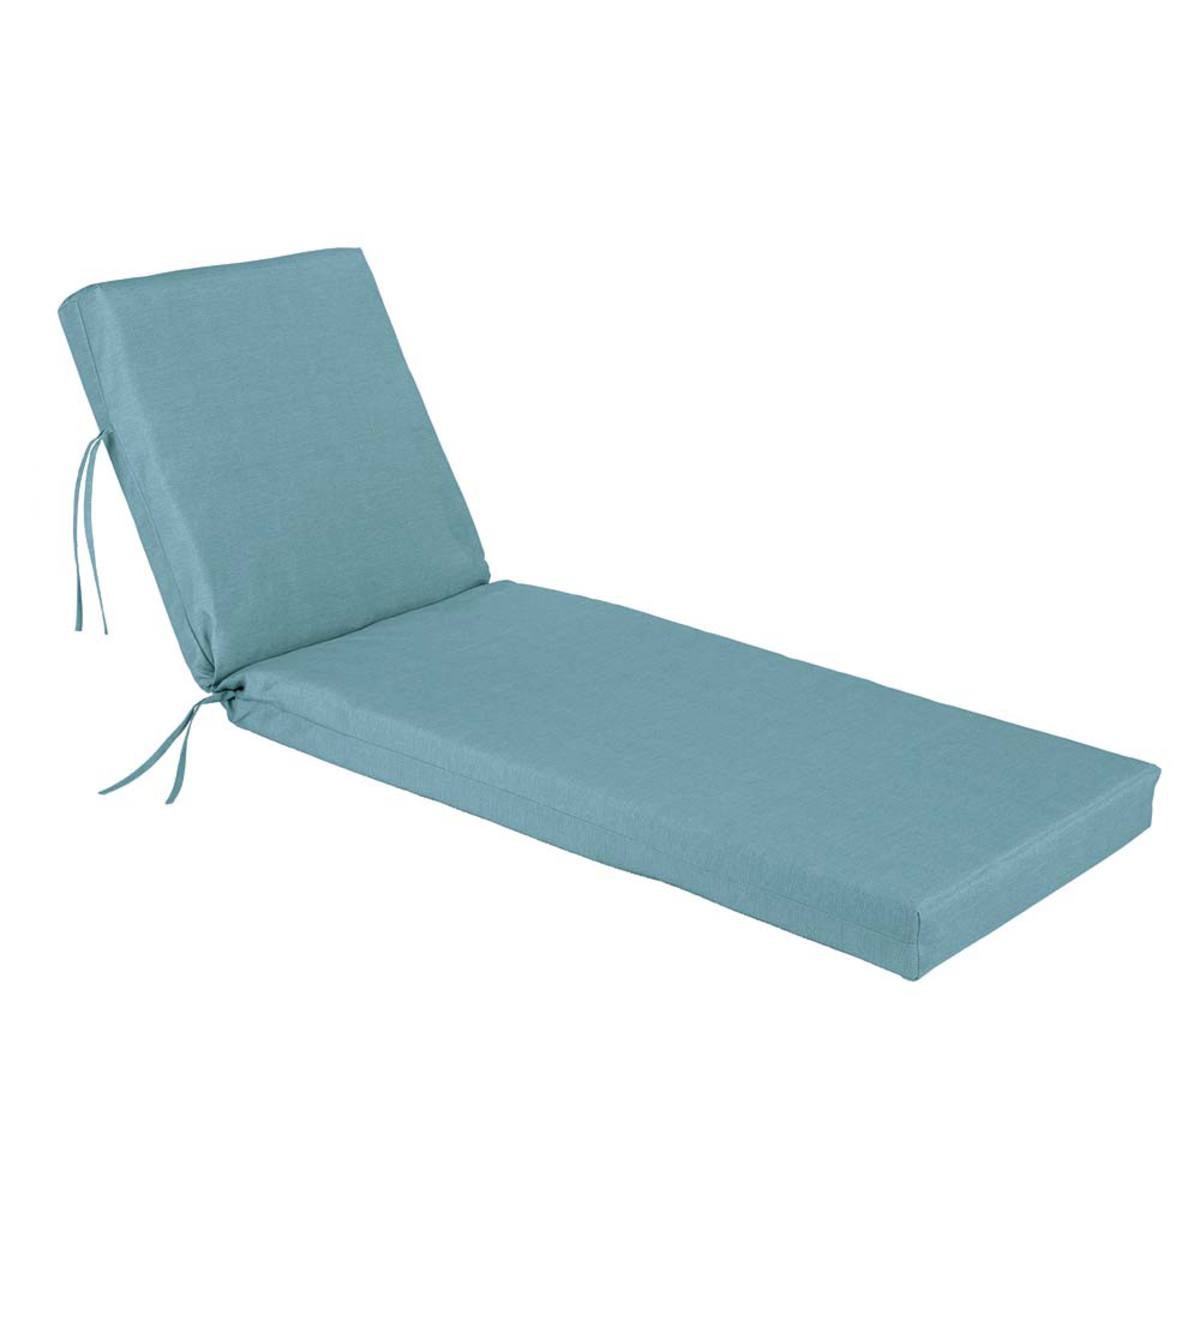 Shenandoah Outdoor Chaise Lounge Chair Cushion